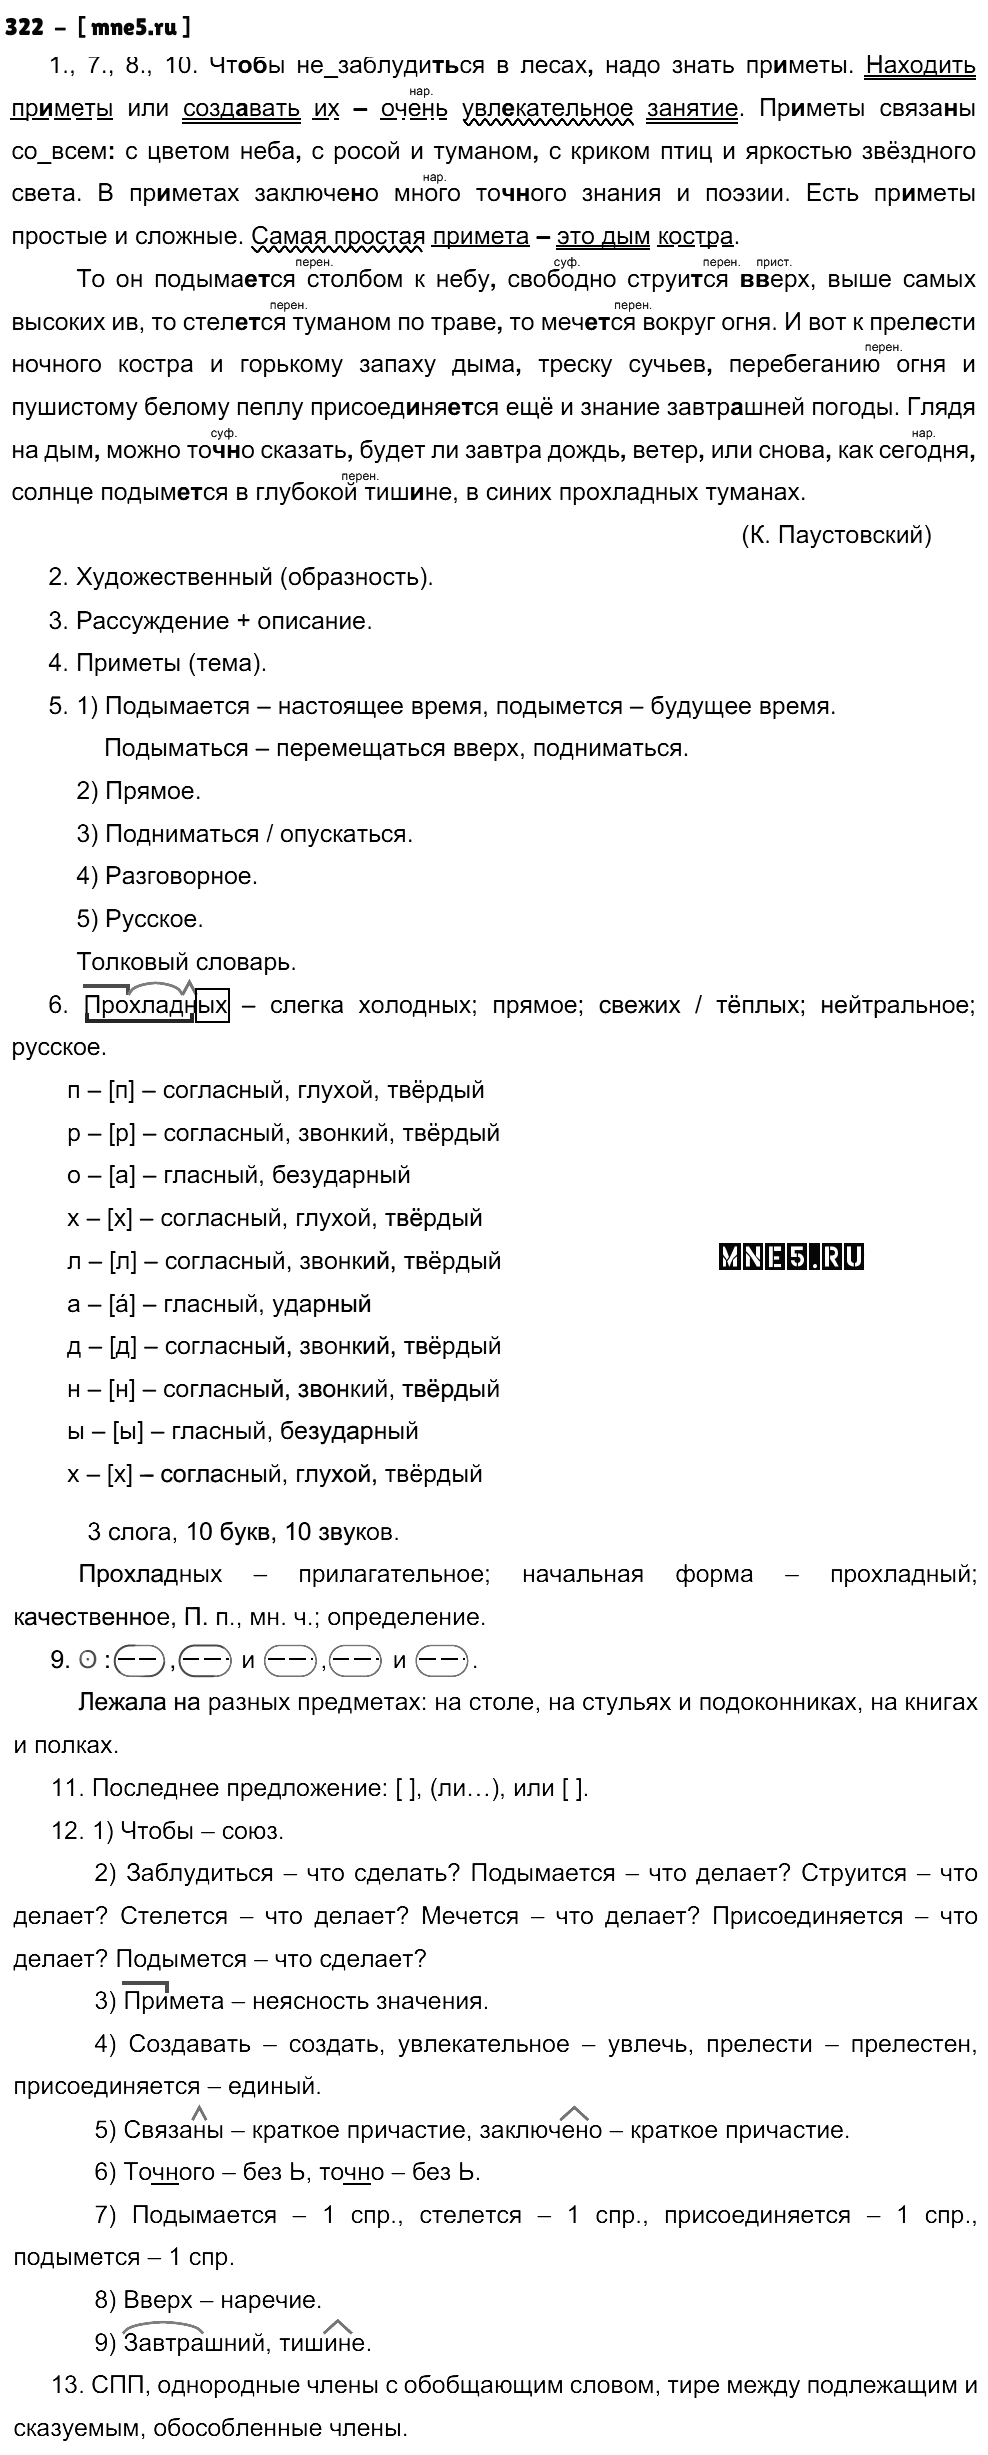 ГДЗ Русский язык 9 класс - 322